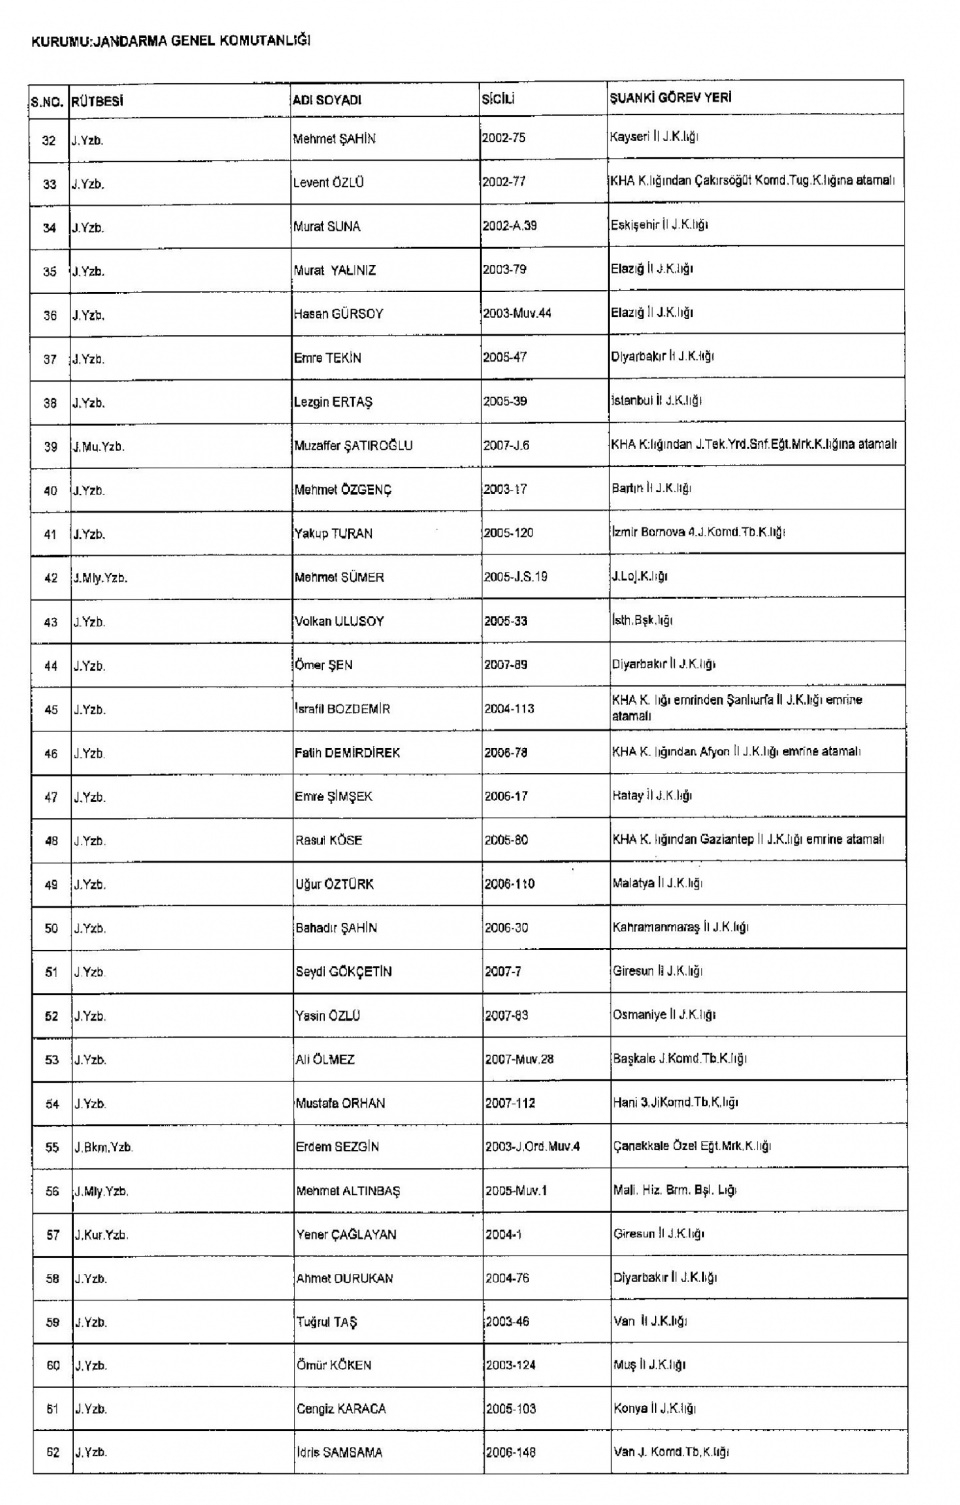 Kamudan ihraç edilenlerin isim isim listesi 50